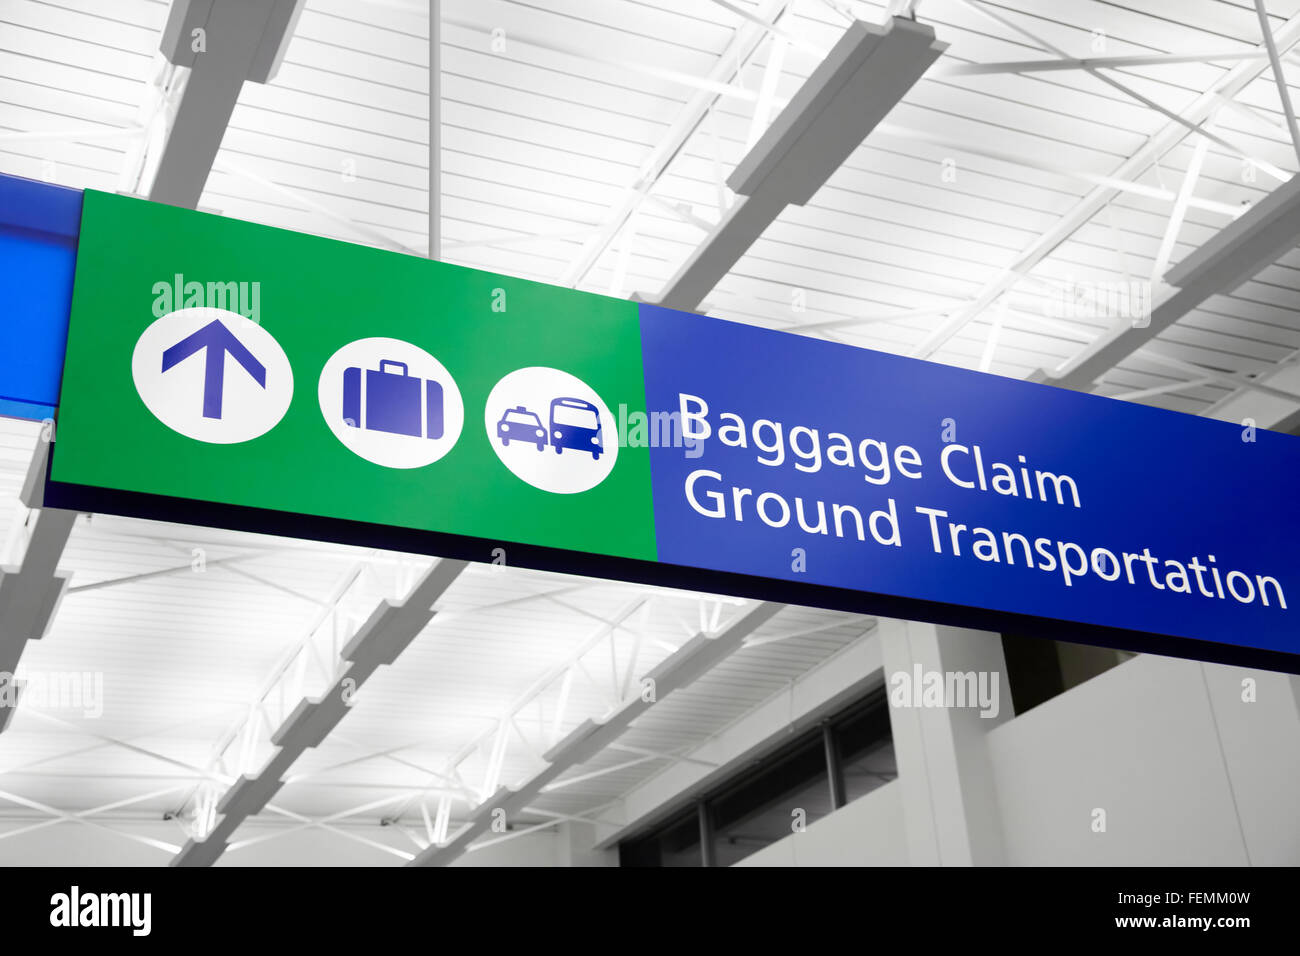 Récupération des bagages de l'aéroport transport au sol et signe avec valise, bus, taxi et symboles. Signe est bleu et vert. Banque D'Images